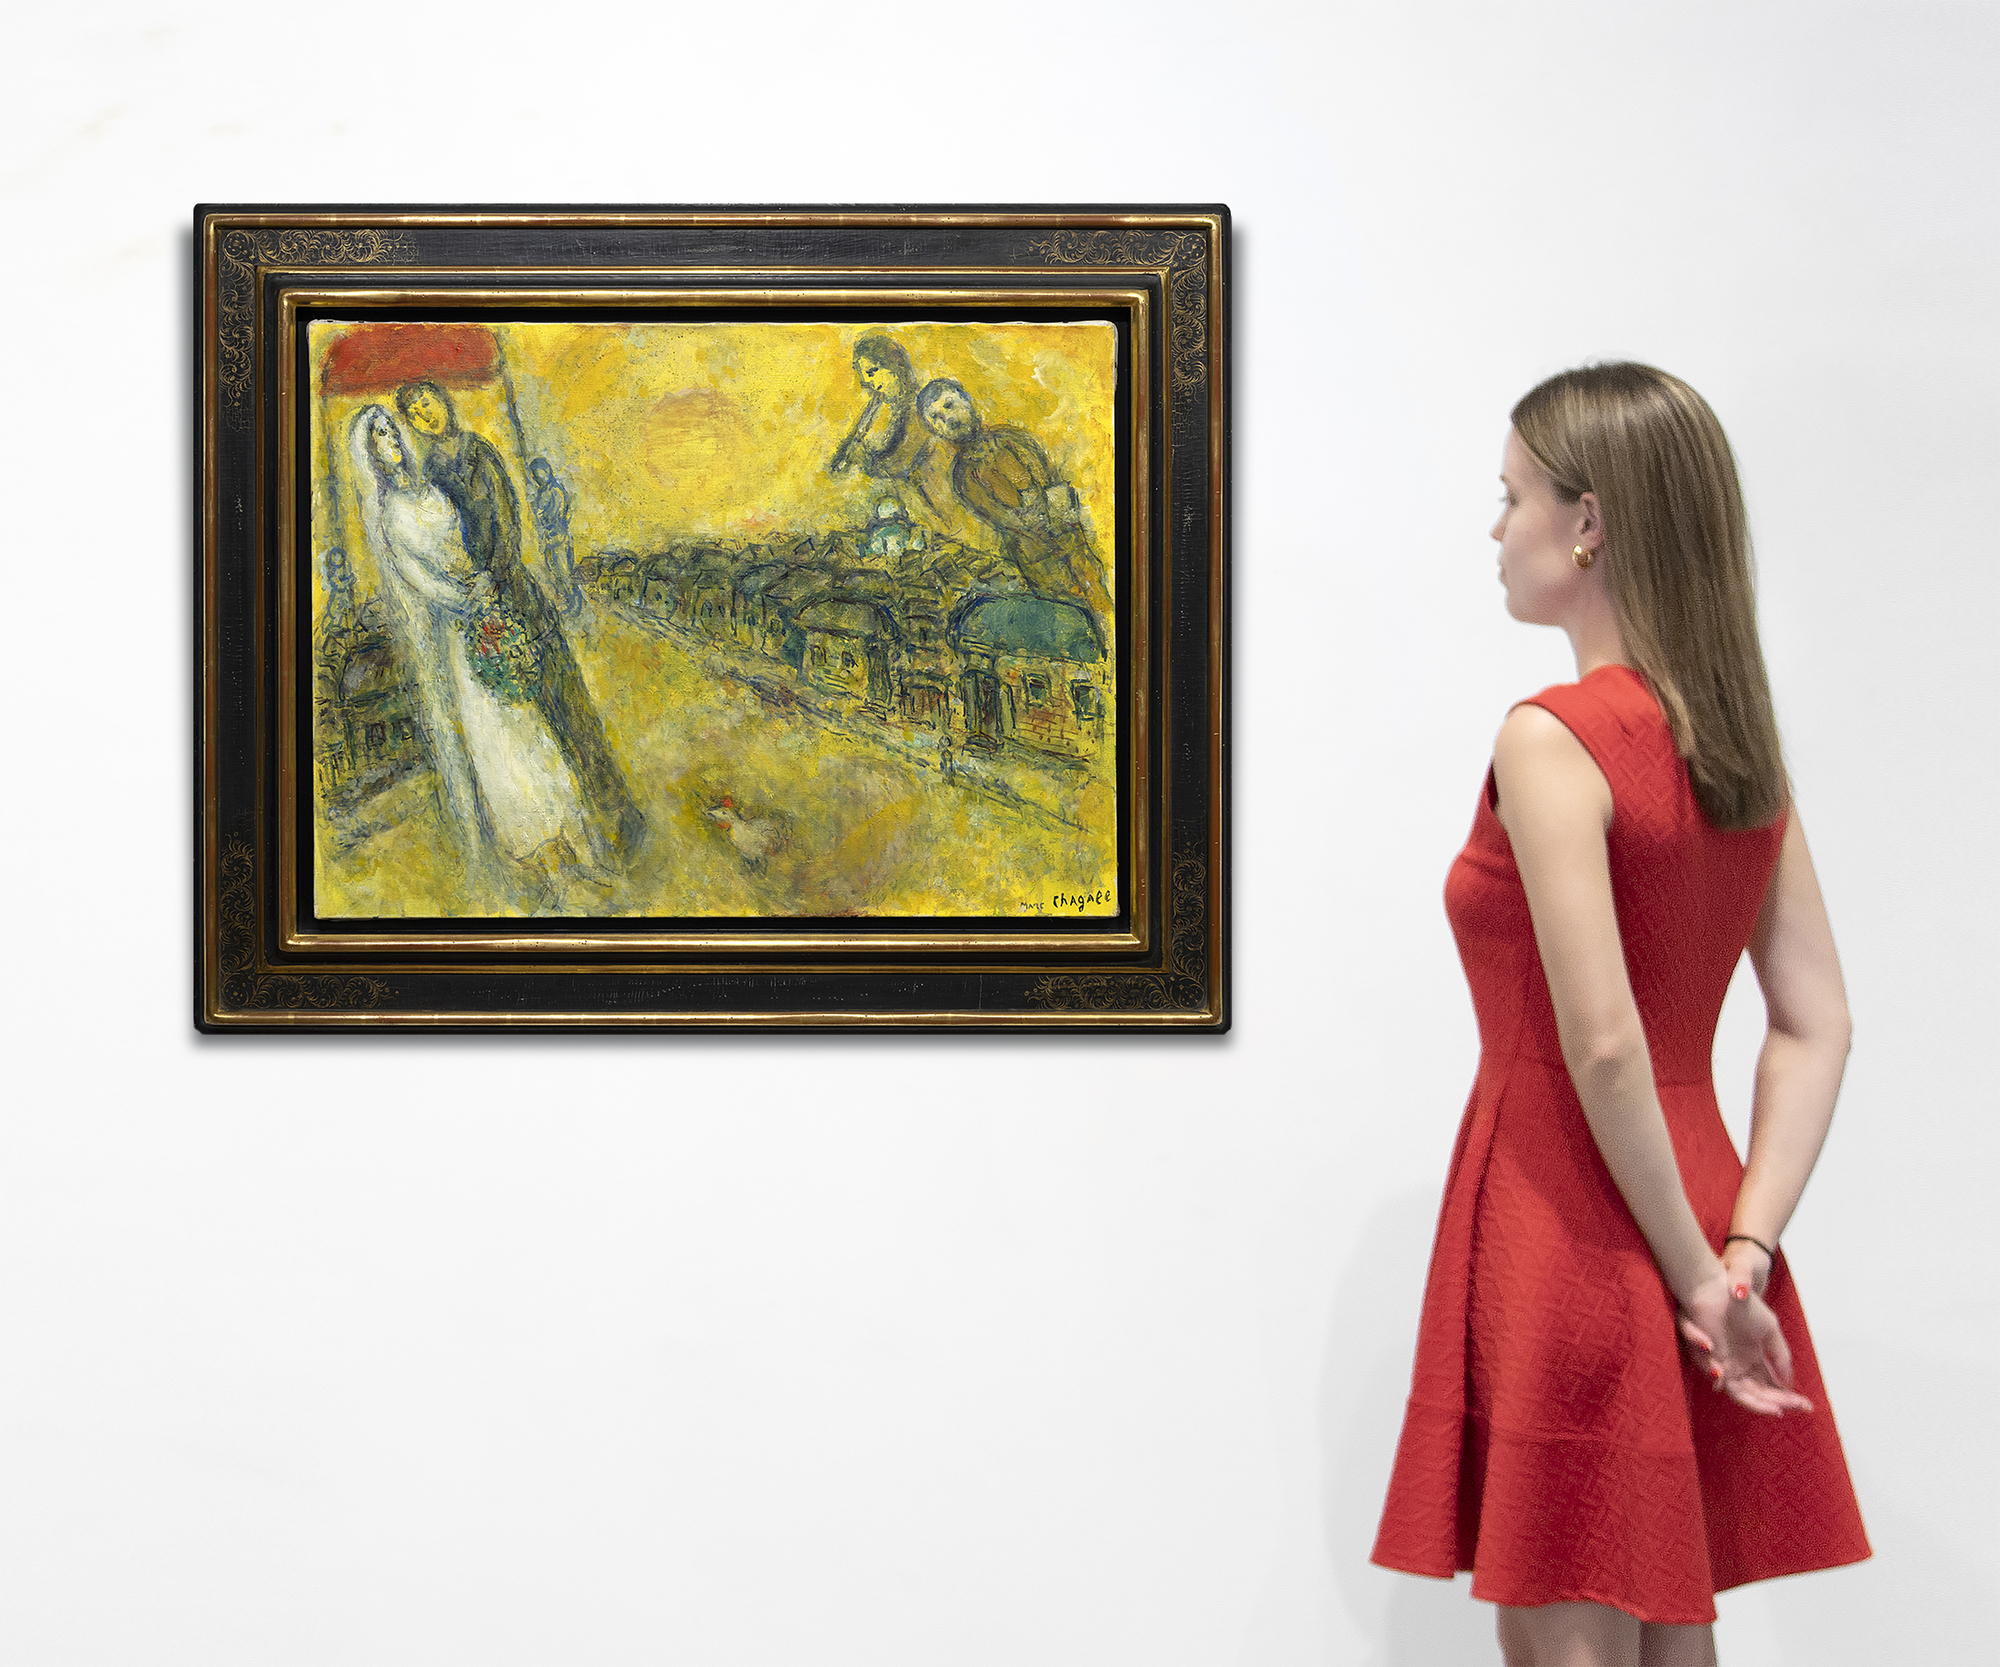 Die Welt von Marc Chagall lässt sich nicht eindämmen oder begrenzen durch die Etiketten, die wir ihr anheften. Es ist eine Welt der Bilder und Bedeutungen, die ihren eigenen, herrlich mystischen Diskurs bilden. Les Mariés sous le baldaquin (Die Braut und der Bräutigam unter dem Baldachin) entstand zu Beginn des 90. Lebensjahres des Künstlers, eines Mannes, der Tragödien und Kämpfe erlebt hatte, der aber nie die Momente der Freude im Leben vergaß. Hier werden uns die träumerischen Freuden einer russischen Dorfhochzeit mit ihren Arrangements aus altgedienten Teilnehmern mit so viel fröhlichem Witz und heiterer Unschuld vor Augen geführt, dass man sich ihrem Charme nicht entziehen kann. Durch die Verwendung einer goldfarbenen Emulsion, die eine Kombination aus Öl und opaker Gouache auf Wasserbasis darstellt, wird die Wärme, das Glück und der Optimismus von Chagalls üblichem Positivismus in einen leuchtenden Glanz gehüllt, der an den Einfluss von religiösen Ikonen mit Blattgold oder an die Malerei der Frührenaissance erinnert, die den Eindruck von göttlichem Licht oder spiritueller Erleuchtung vermitteln wollte. Die Kombination von Öl und Gouache kann eine Herausforderung sein. Aber hier, in Les Mariés sous le baldaquin, setzt Chagall sie ein, um der Szene eine jenseitige Qualität zu verleihen, fast so, als ob sie sich vor seinem geistigen Auge materialisiert hätte. Die zarte Textur erweckt den Eindruck, dass das Licht vom Werk selbst ausgeht, und verleiht den im Himmel schwebenden Figuren eine gespenstische Qualität.